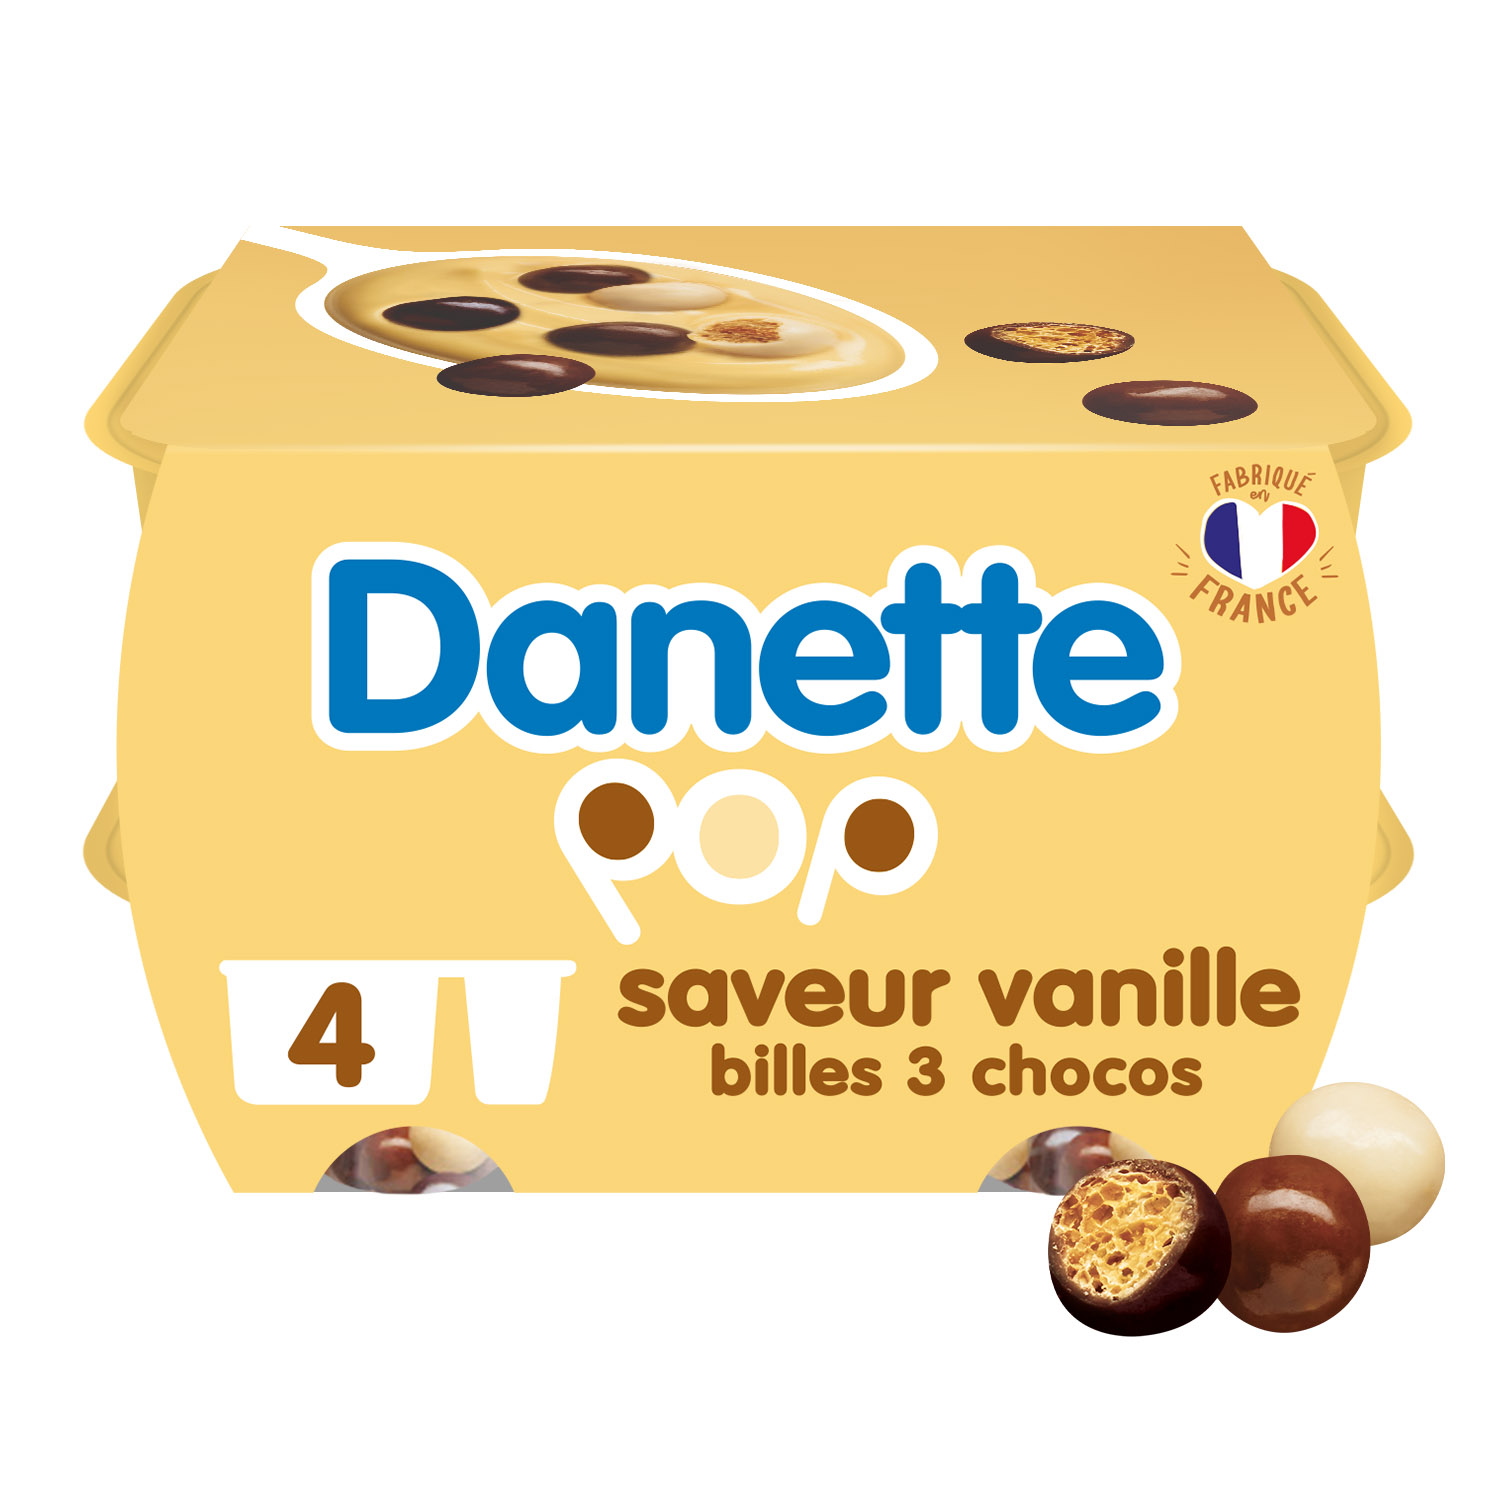 Danette Pop Vanille & billes 3 chocos